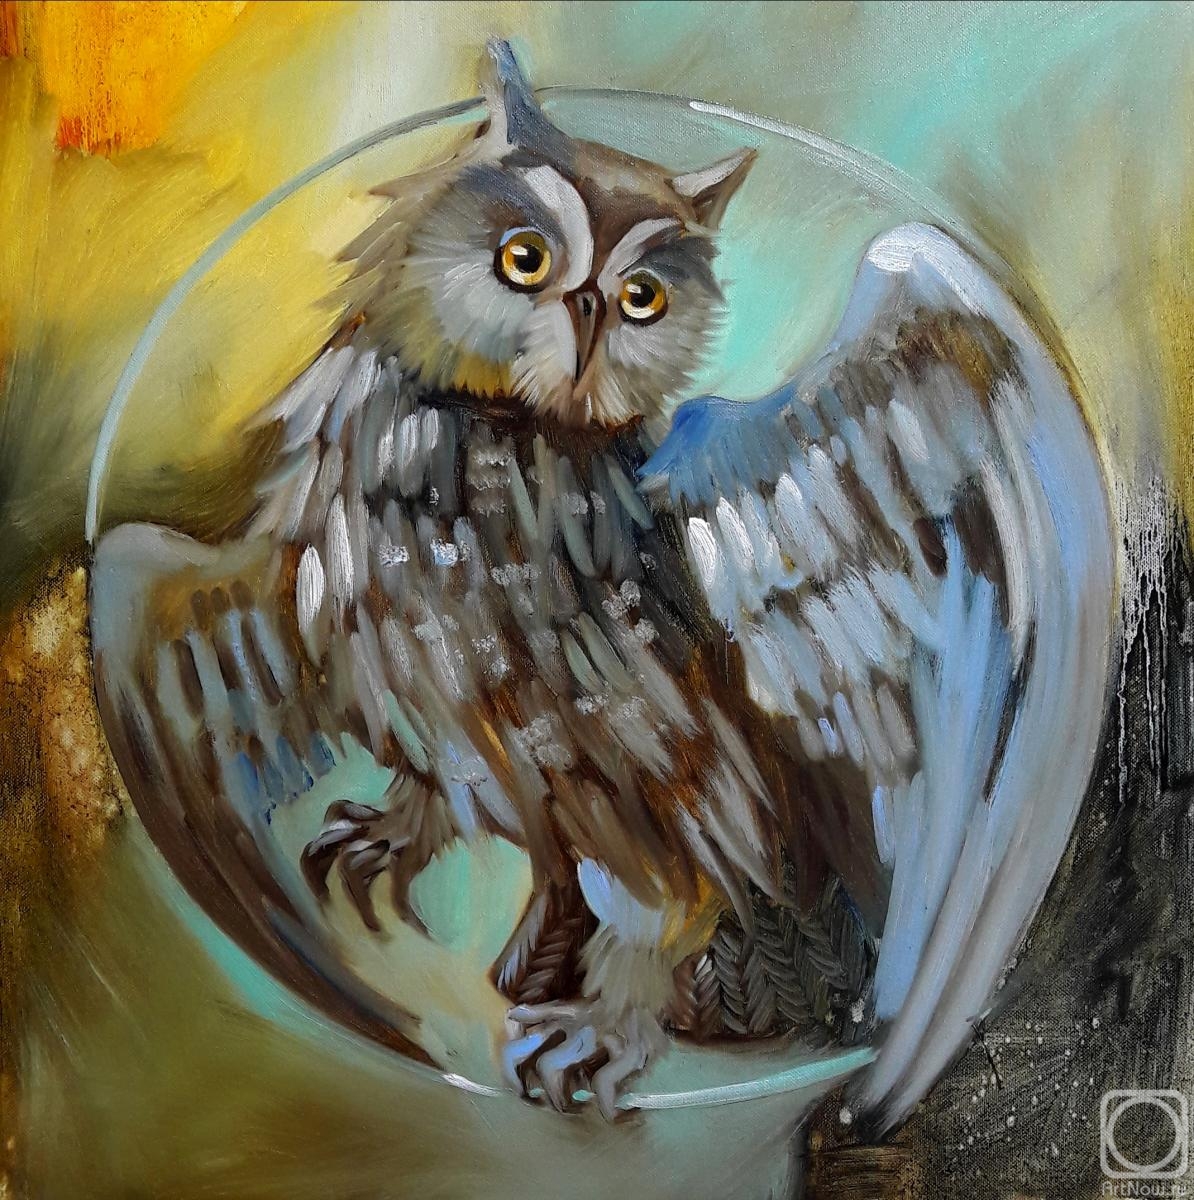 Shagushina Olga. Totem merry Owl. Wake up your totem